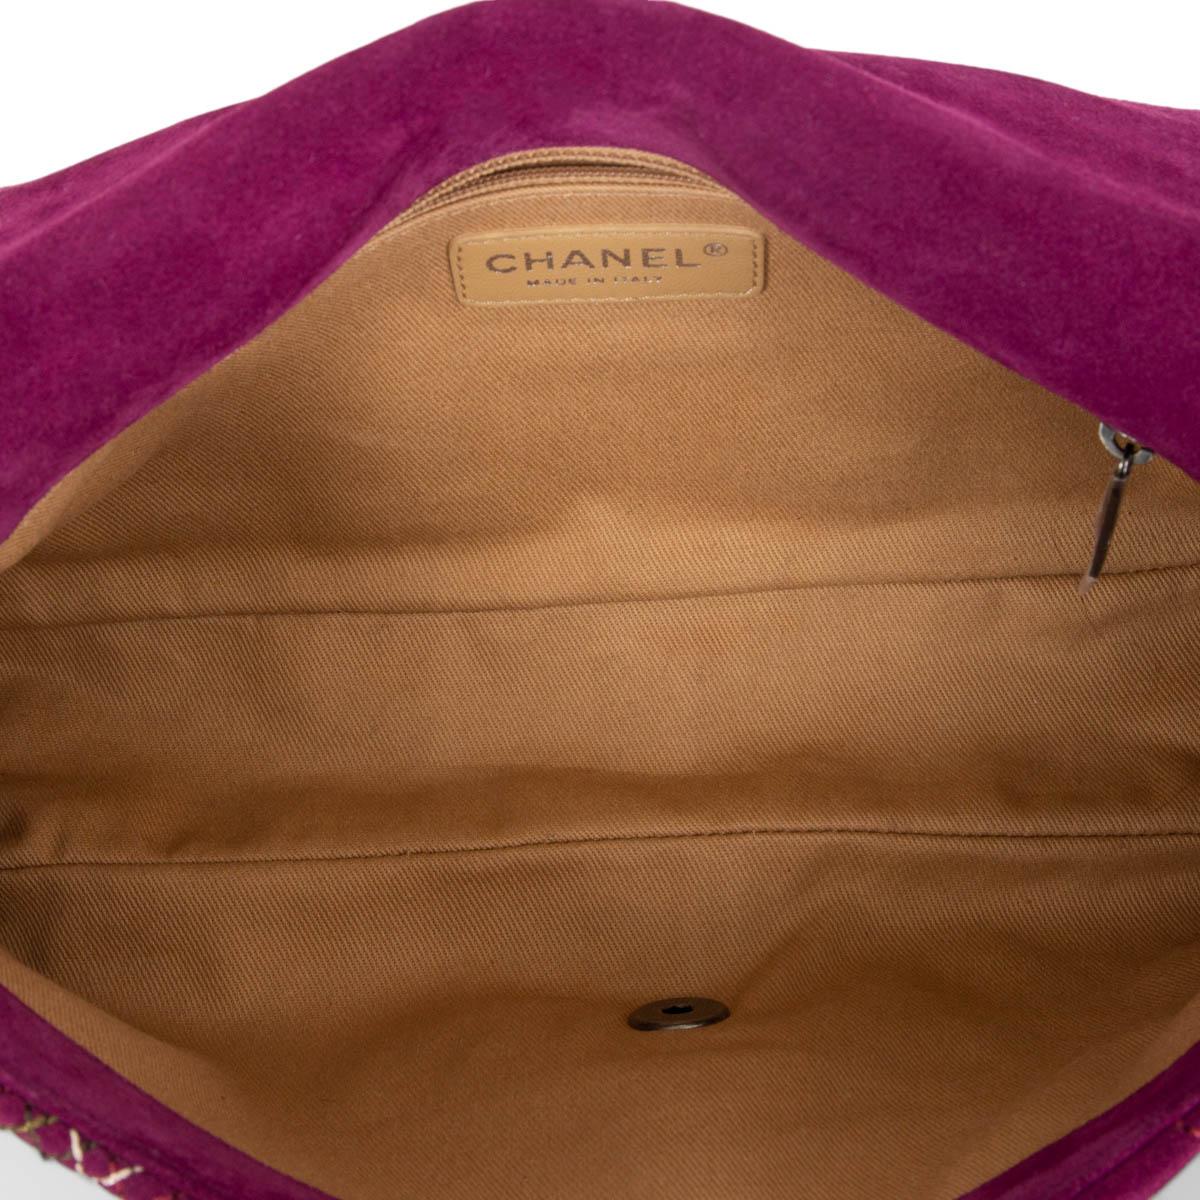 CHANLE purple suede 2013 EDINBURGH SALTIRE MEDIUM FLAP Shoulder Bag 13A For Sale 1